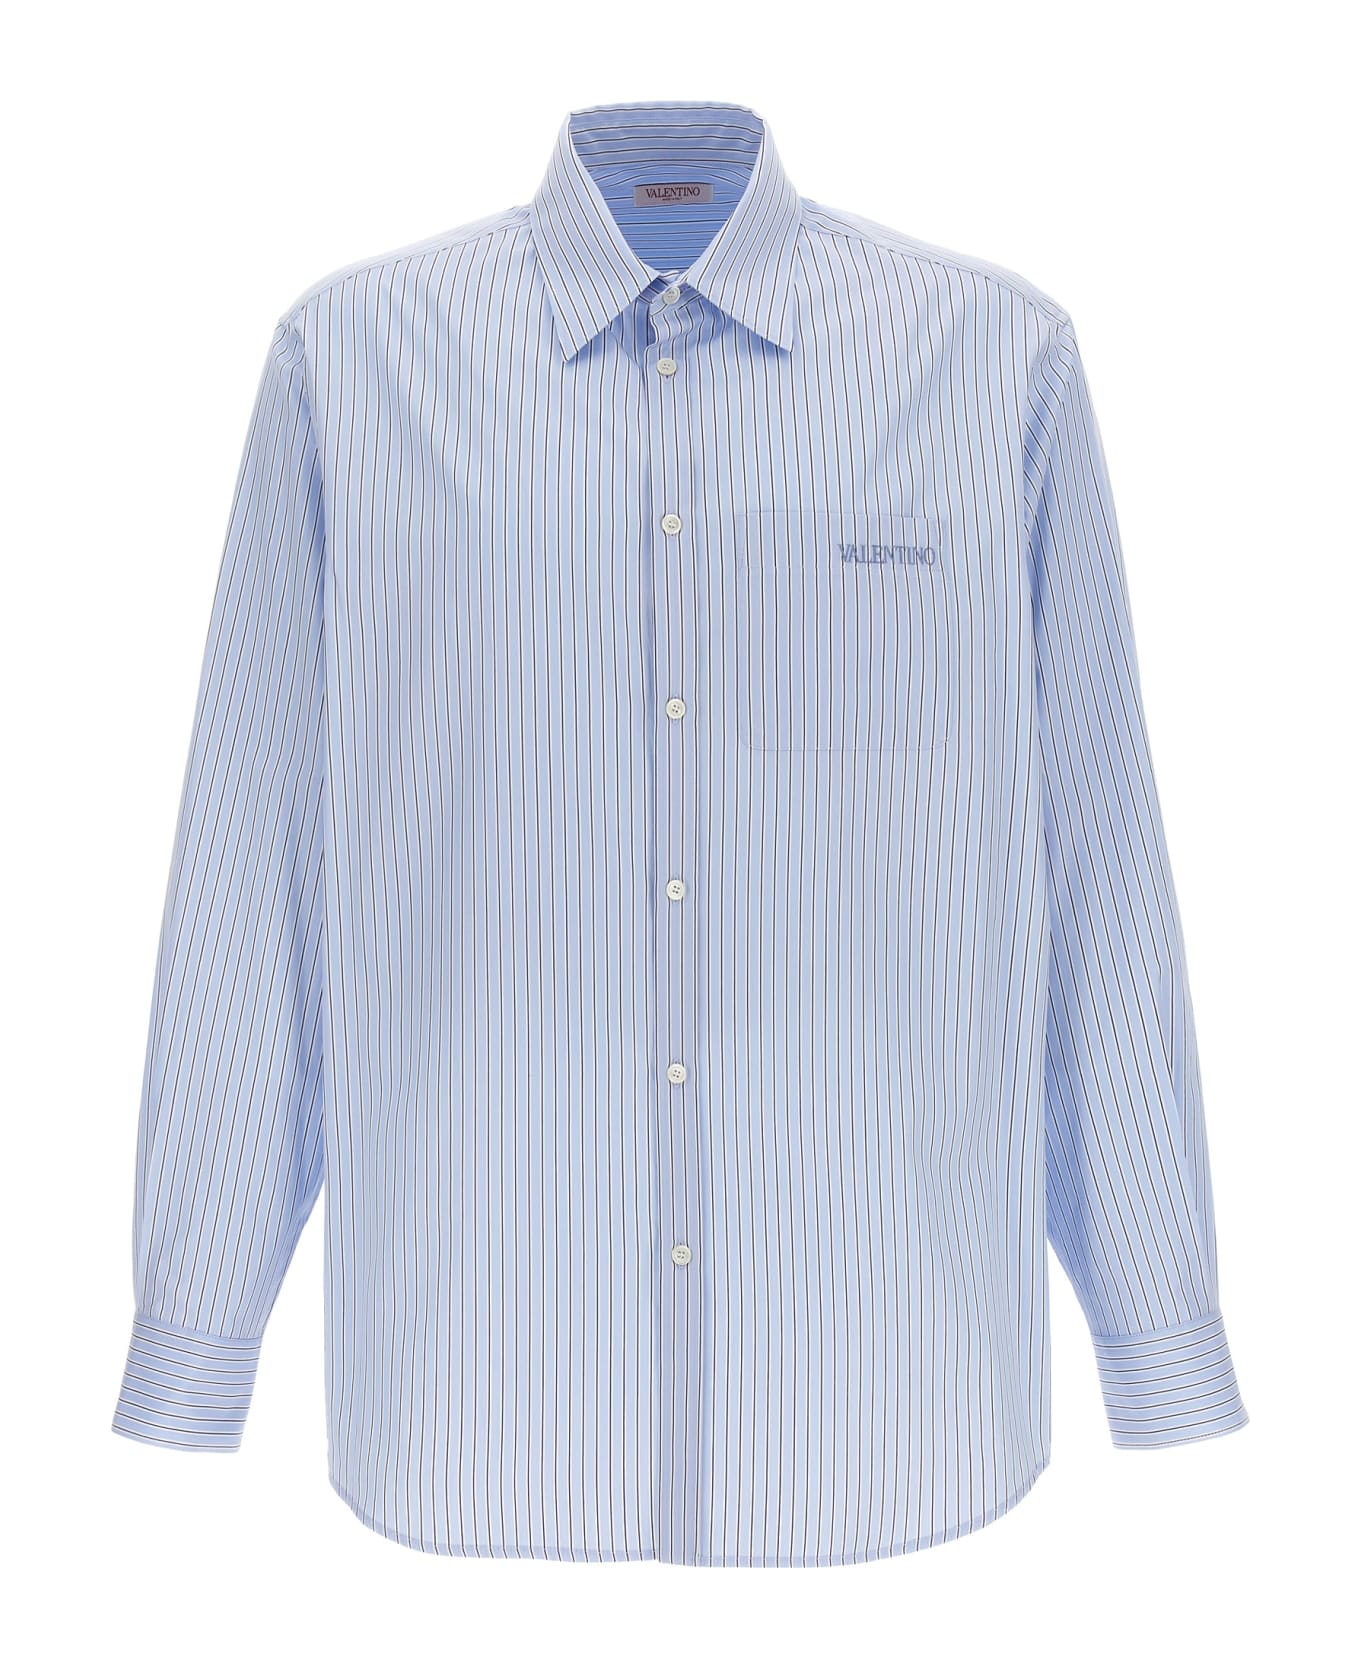 Valentino Garavani Valentino Striped Shirt - Light Blue